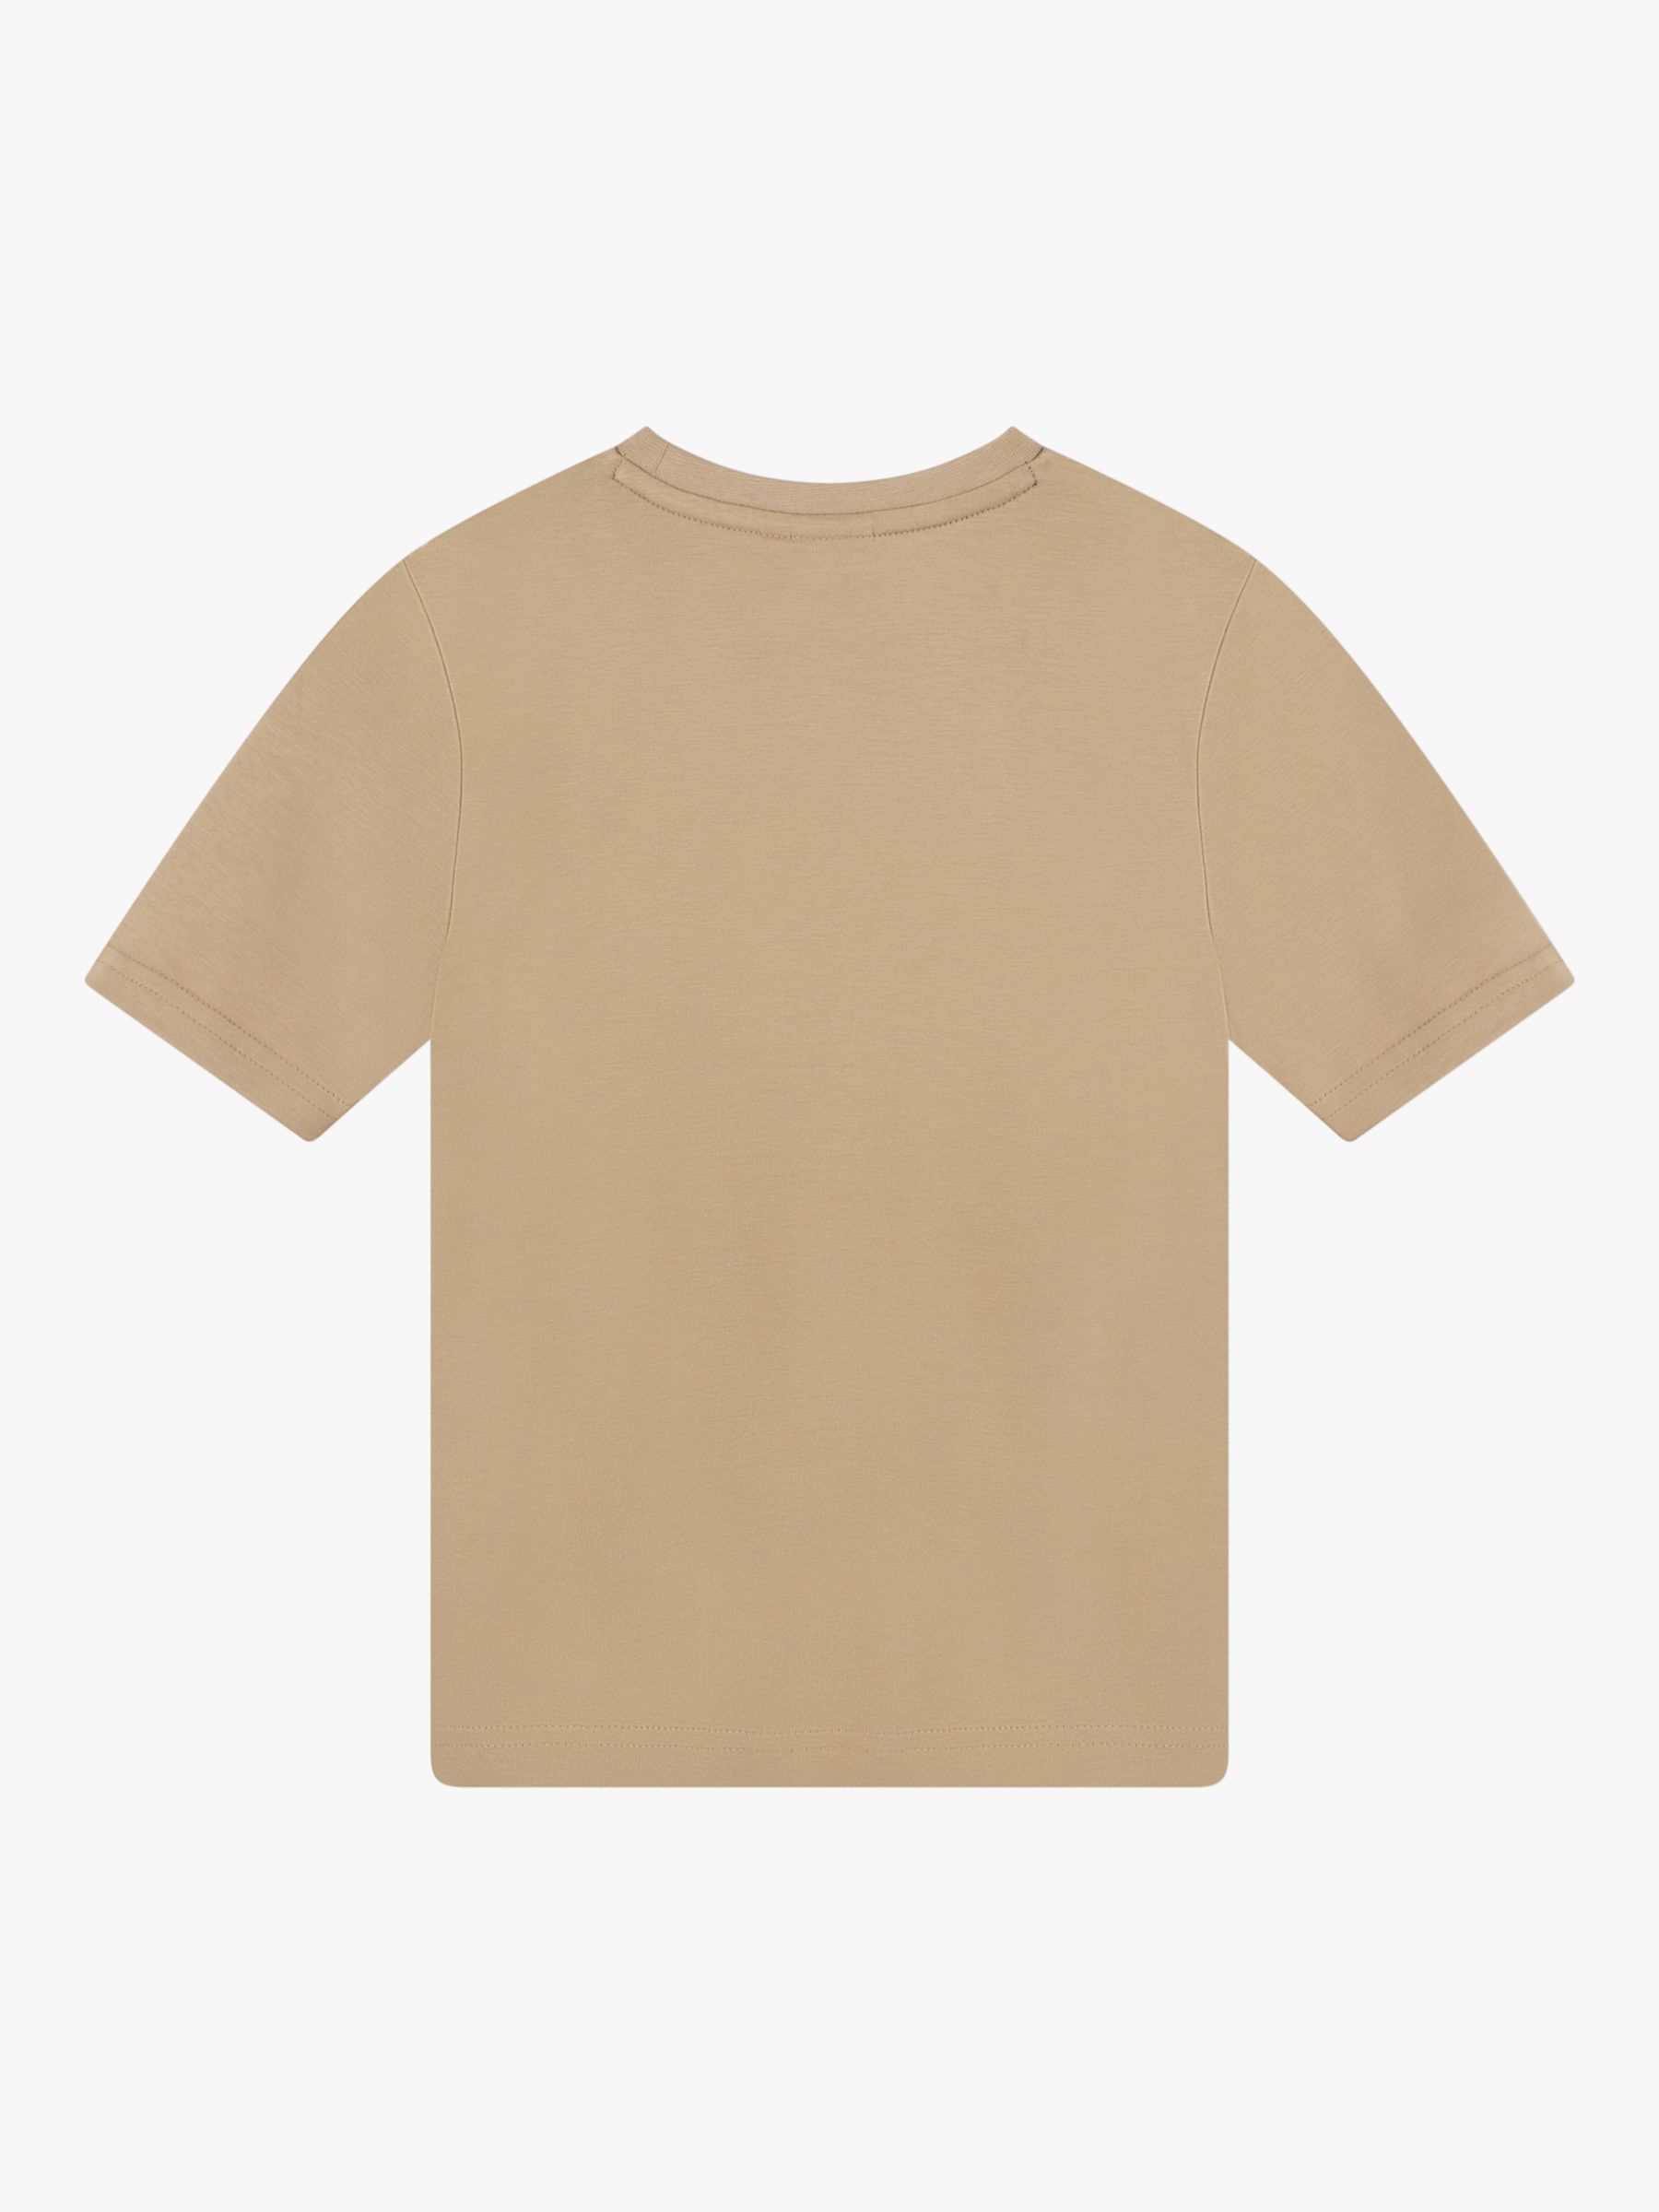 BOSS Kids' Embossed Logo Short Sleeve T-Shirt, Chocolate, 4 years